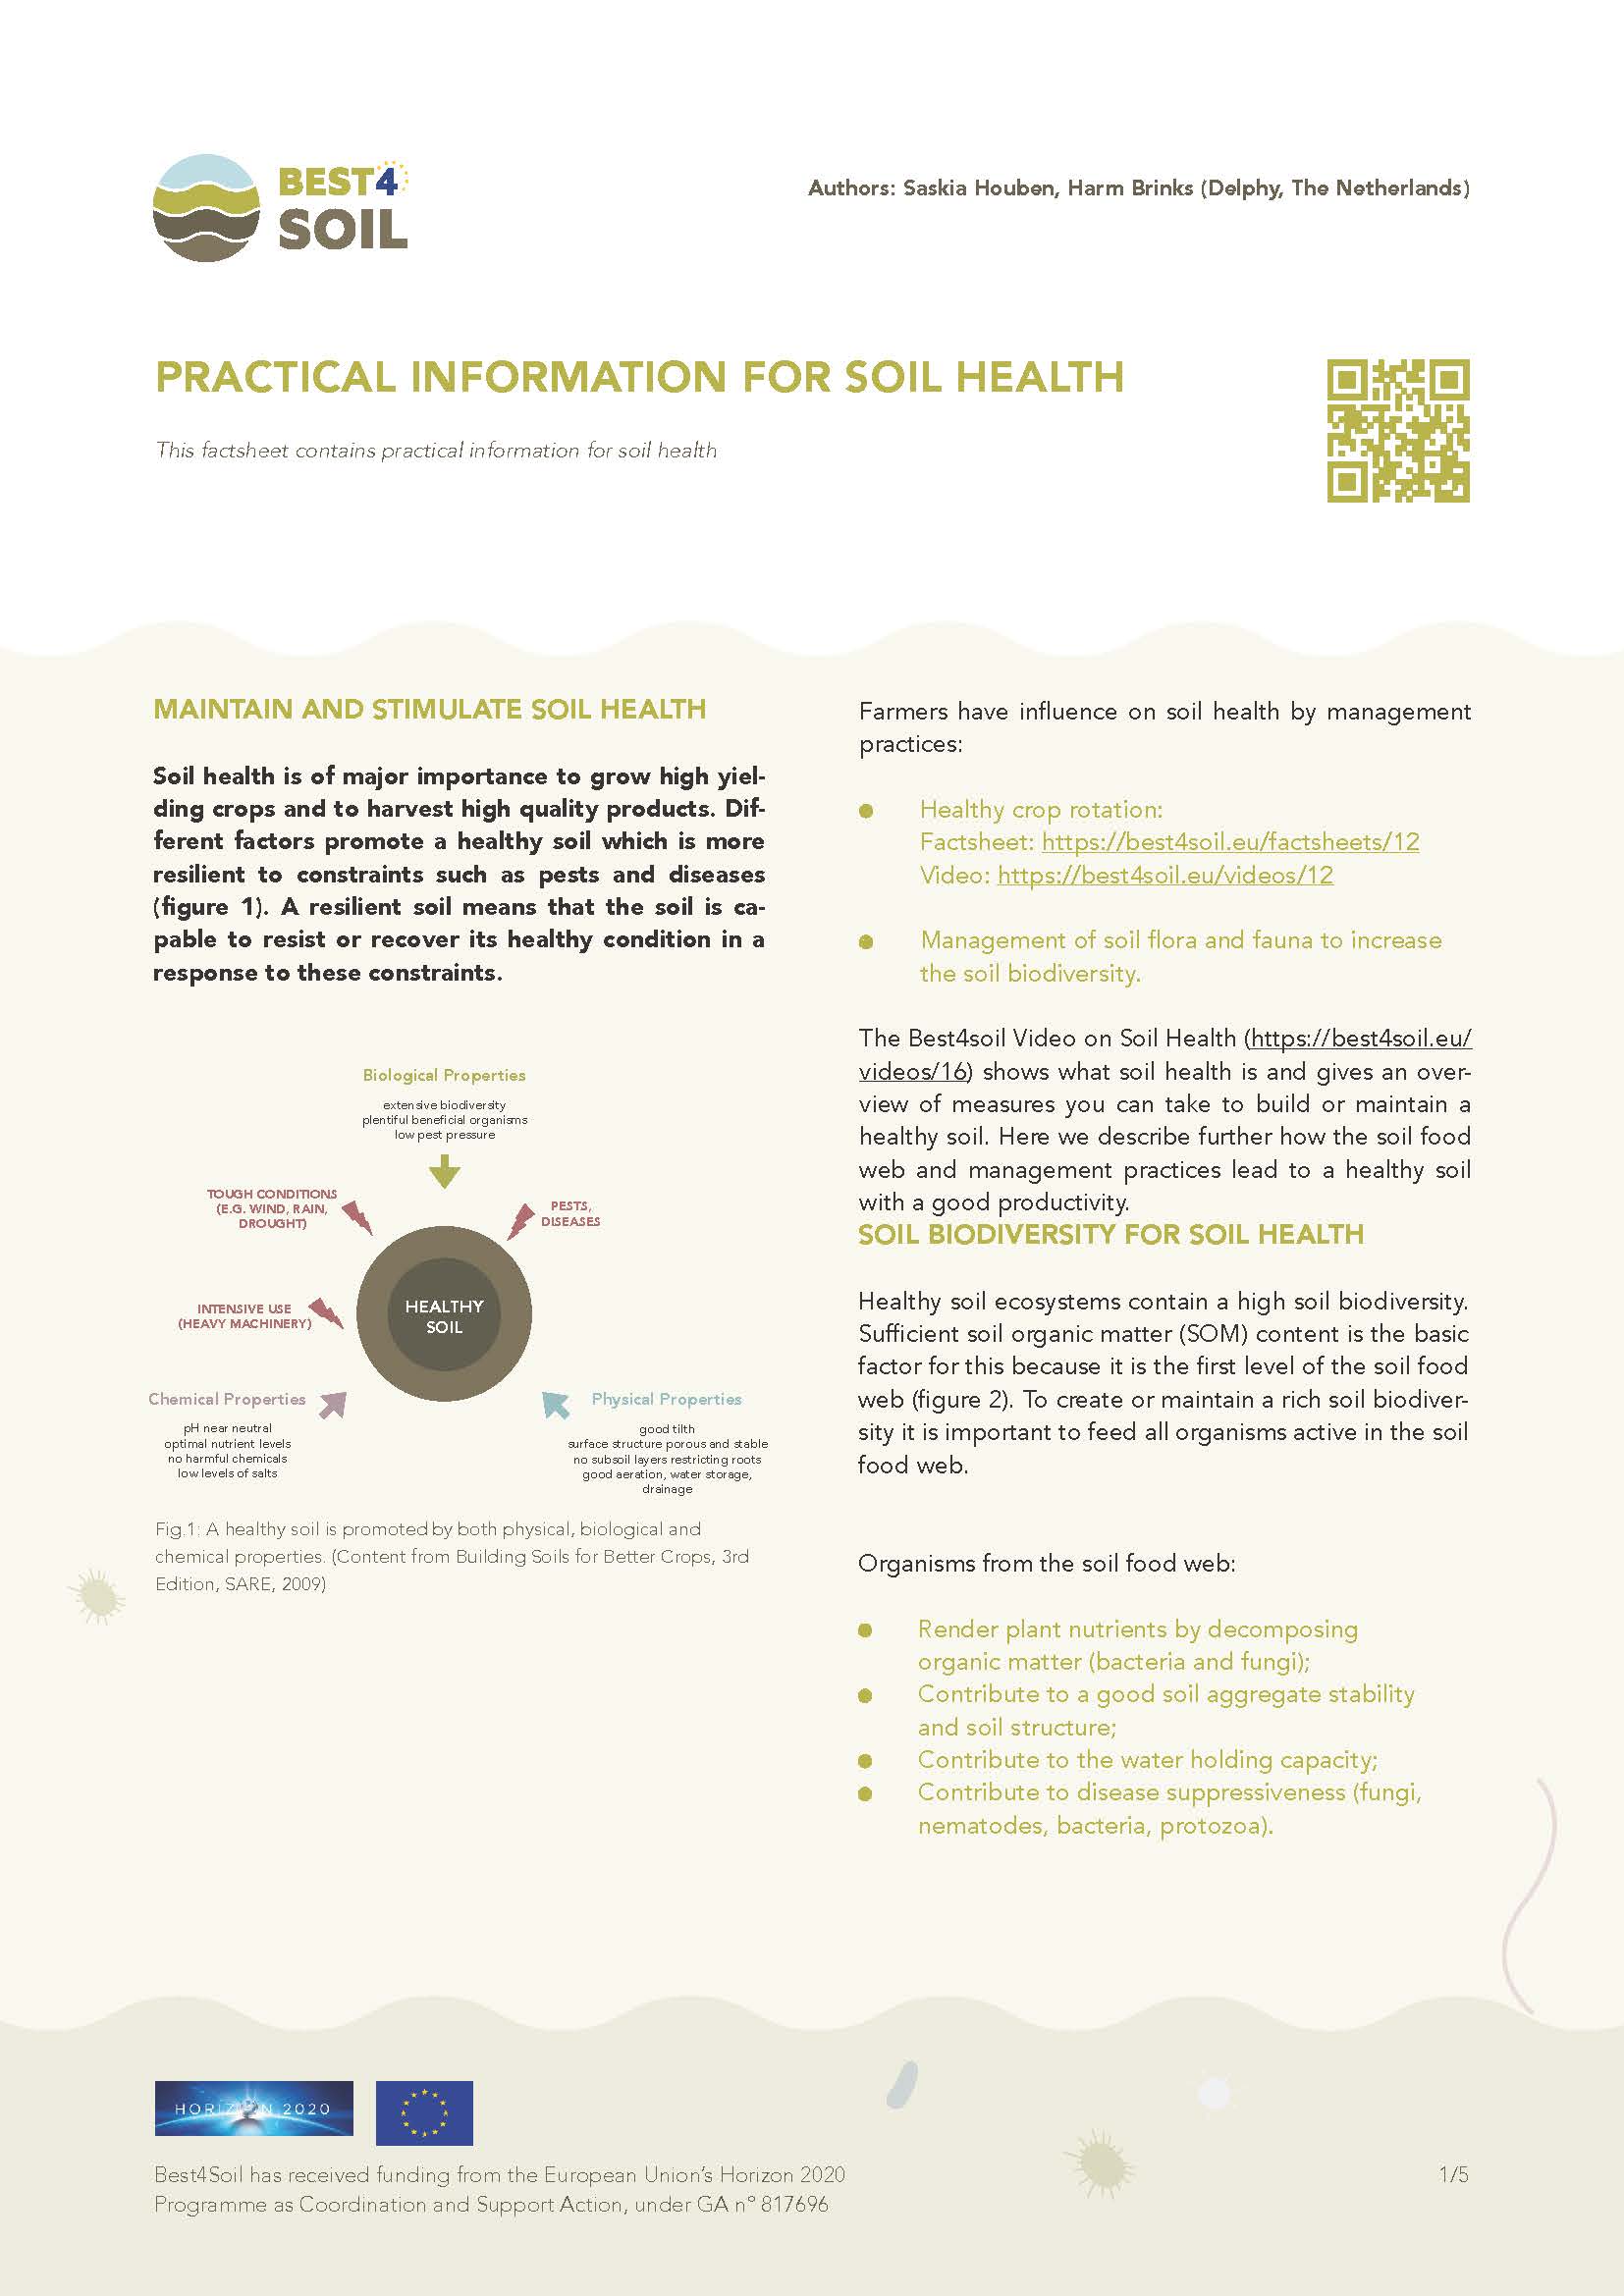 Praktische informatie voor bodemgezondheid (Best4Soil Factsheet)